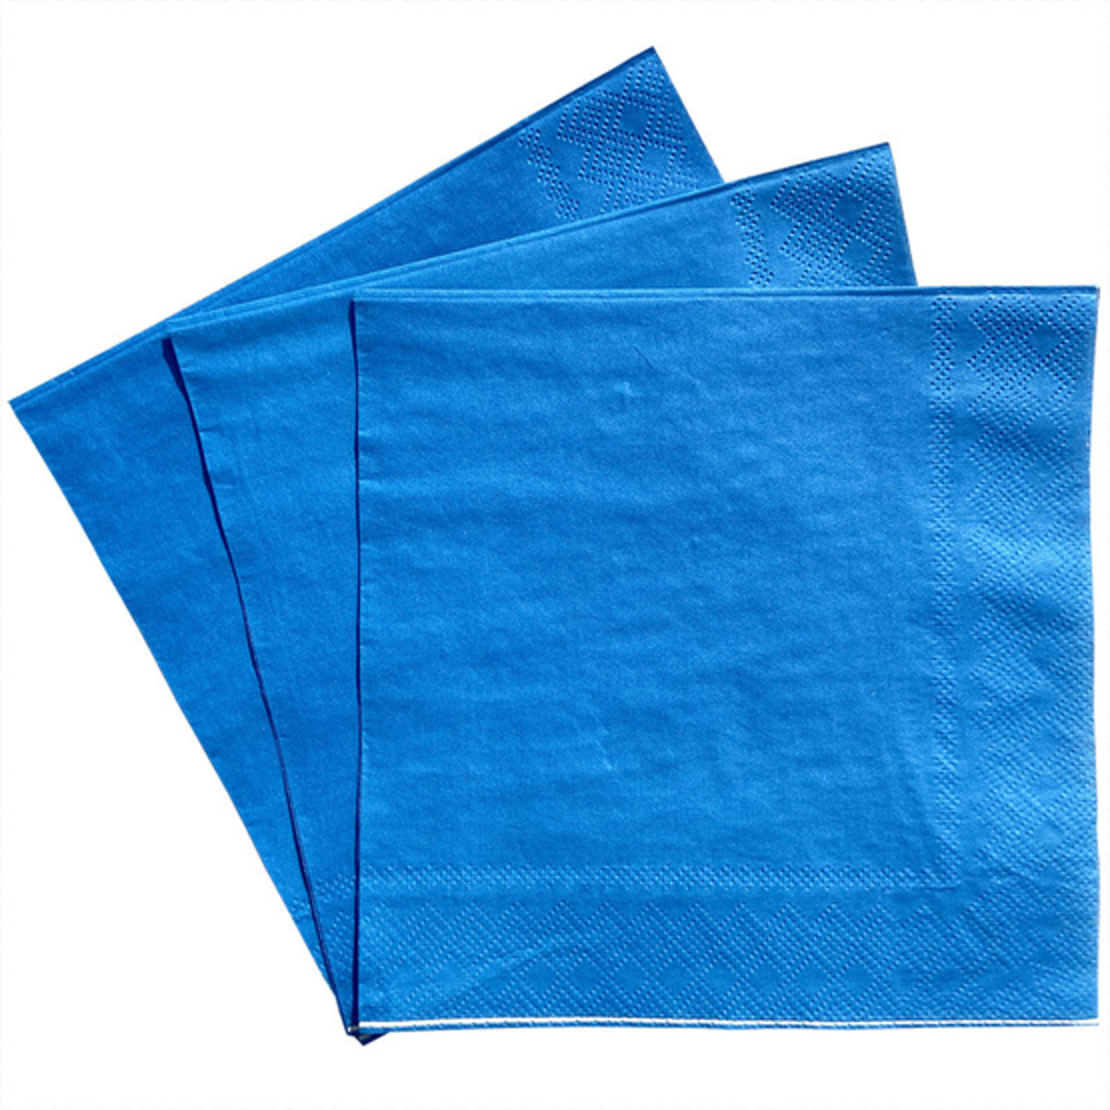 מפיות נייר חלקות צבע כחול - 20 יחידות